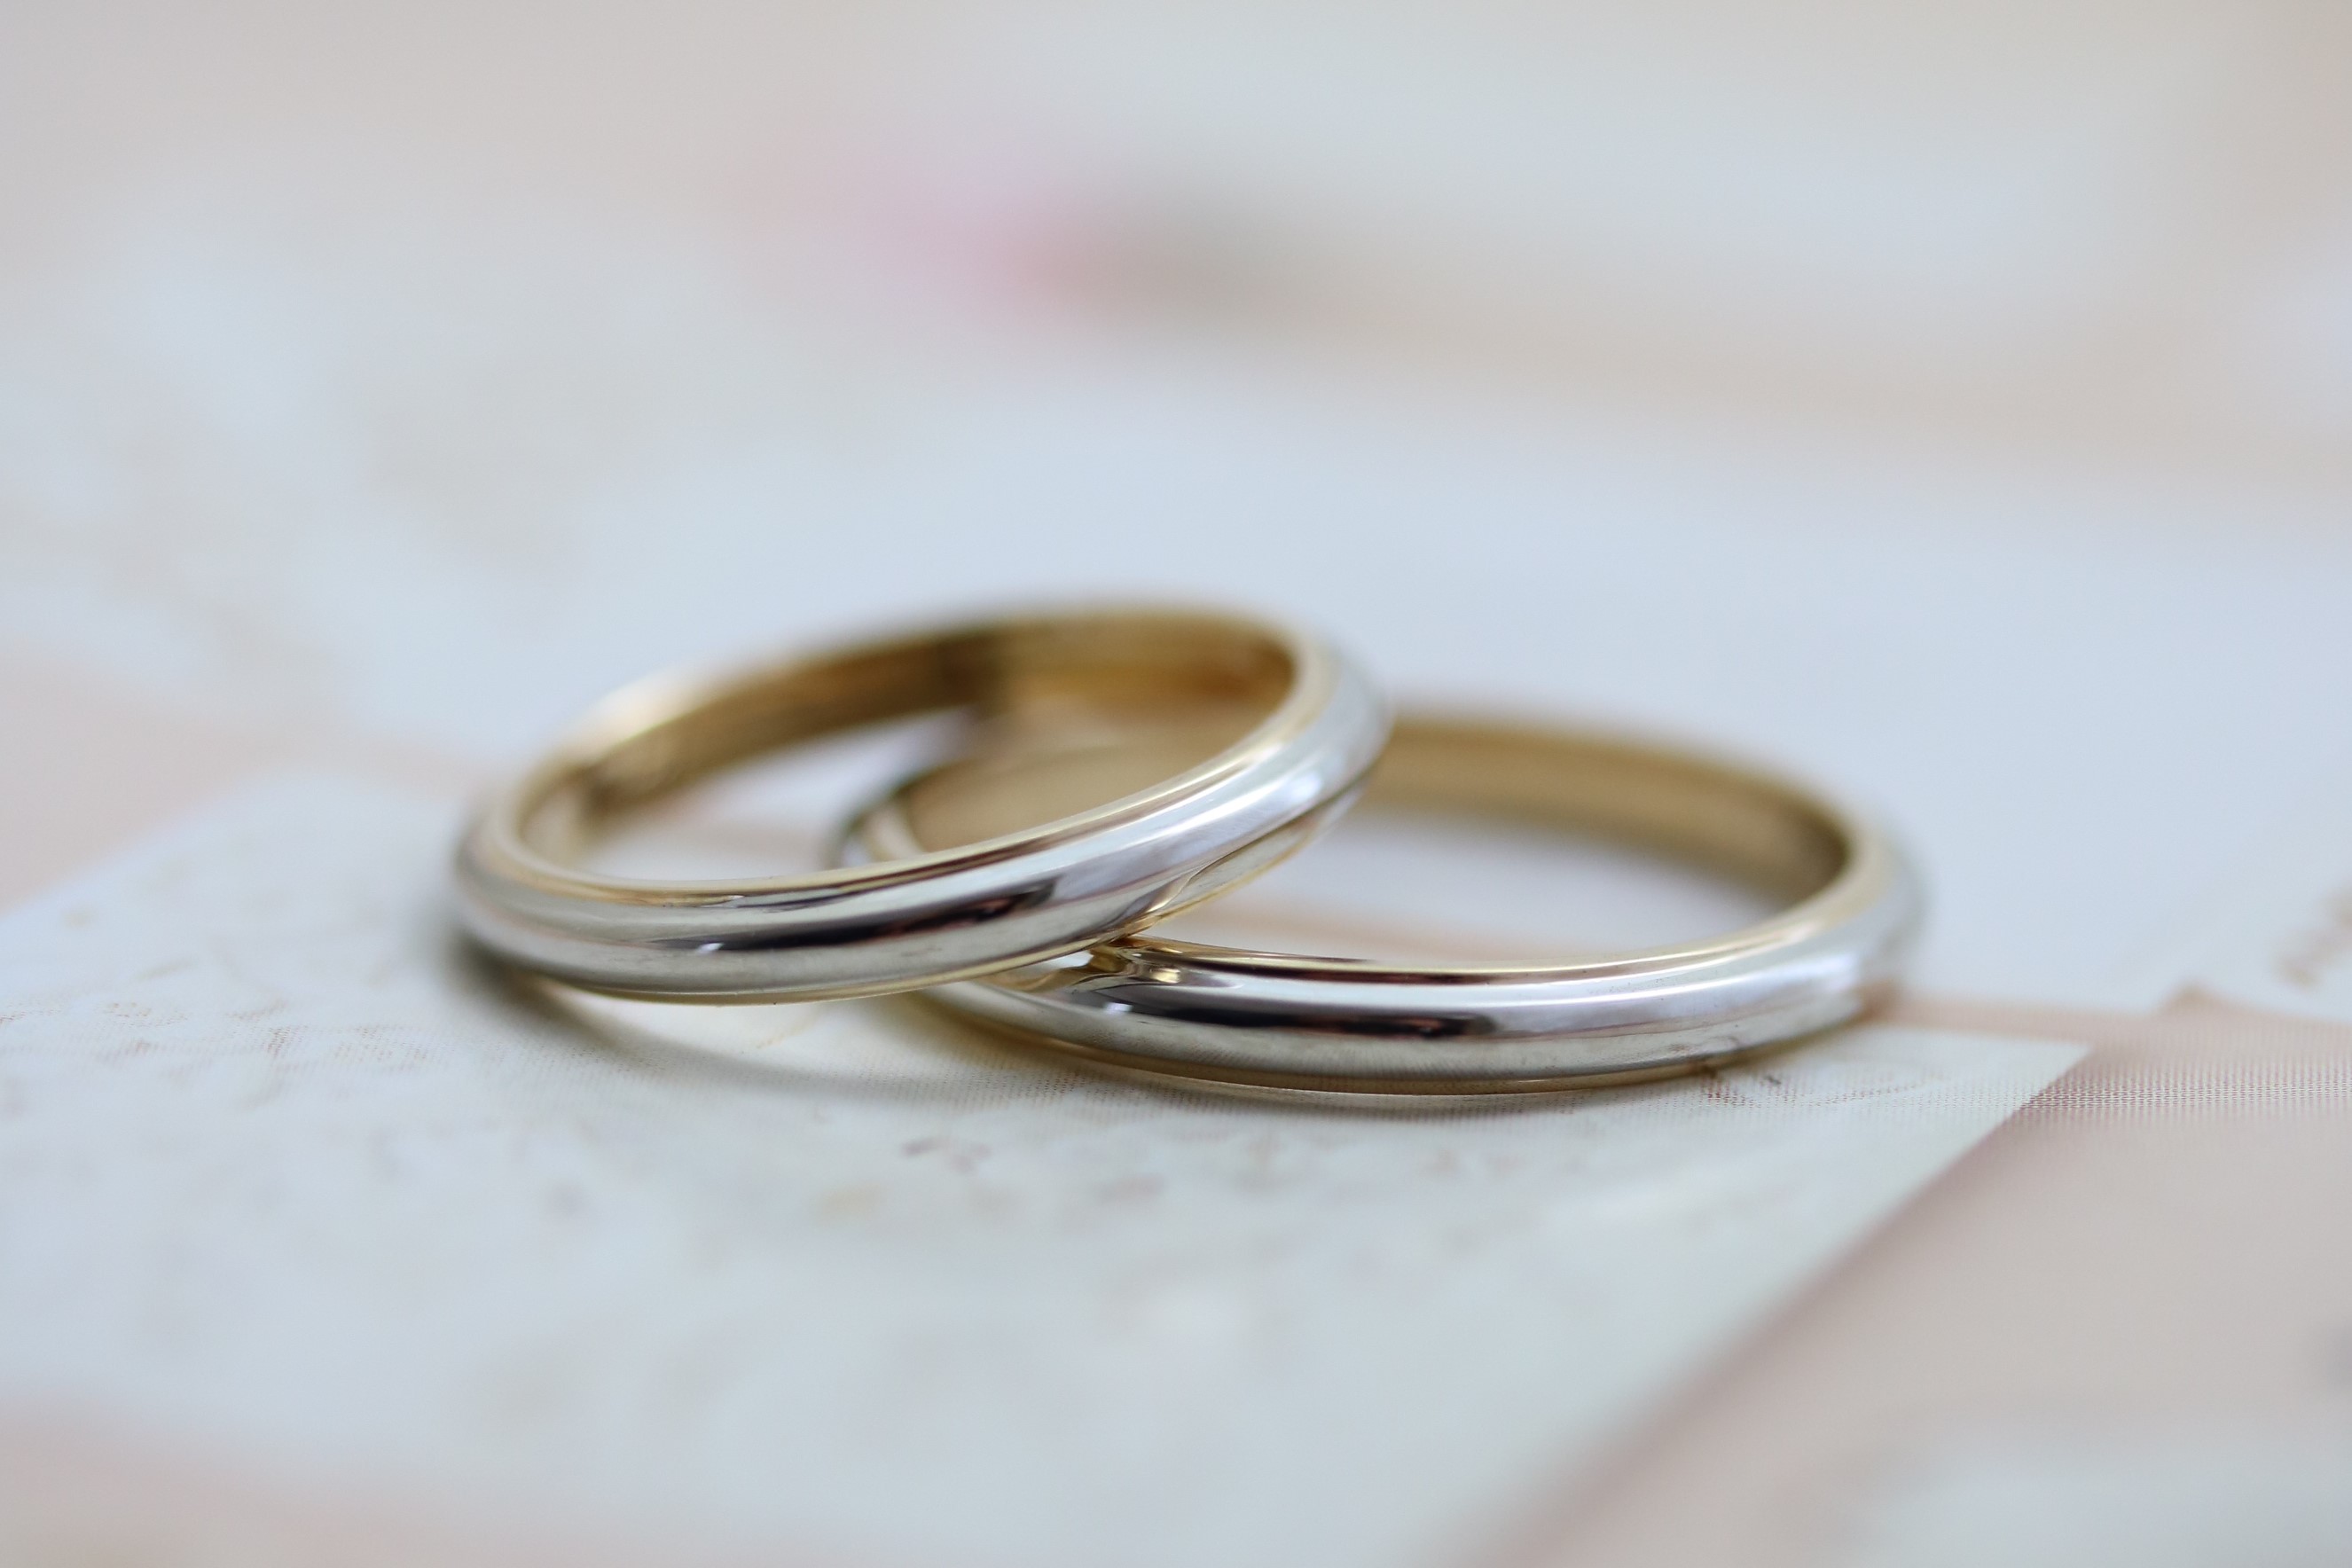 手作り結婚指輪の料金 料金は税込価格です 関西 神戸 大阪で結婚指輪 婚約指輪 遺骨リング 遺骨ペンダントを手作りとオーダーメイドが出来るアトリエ